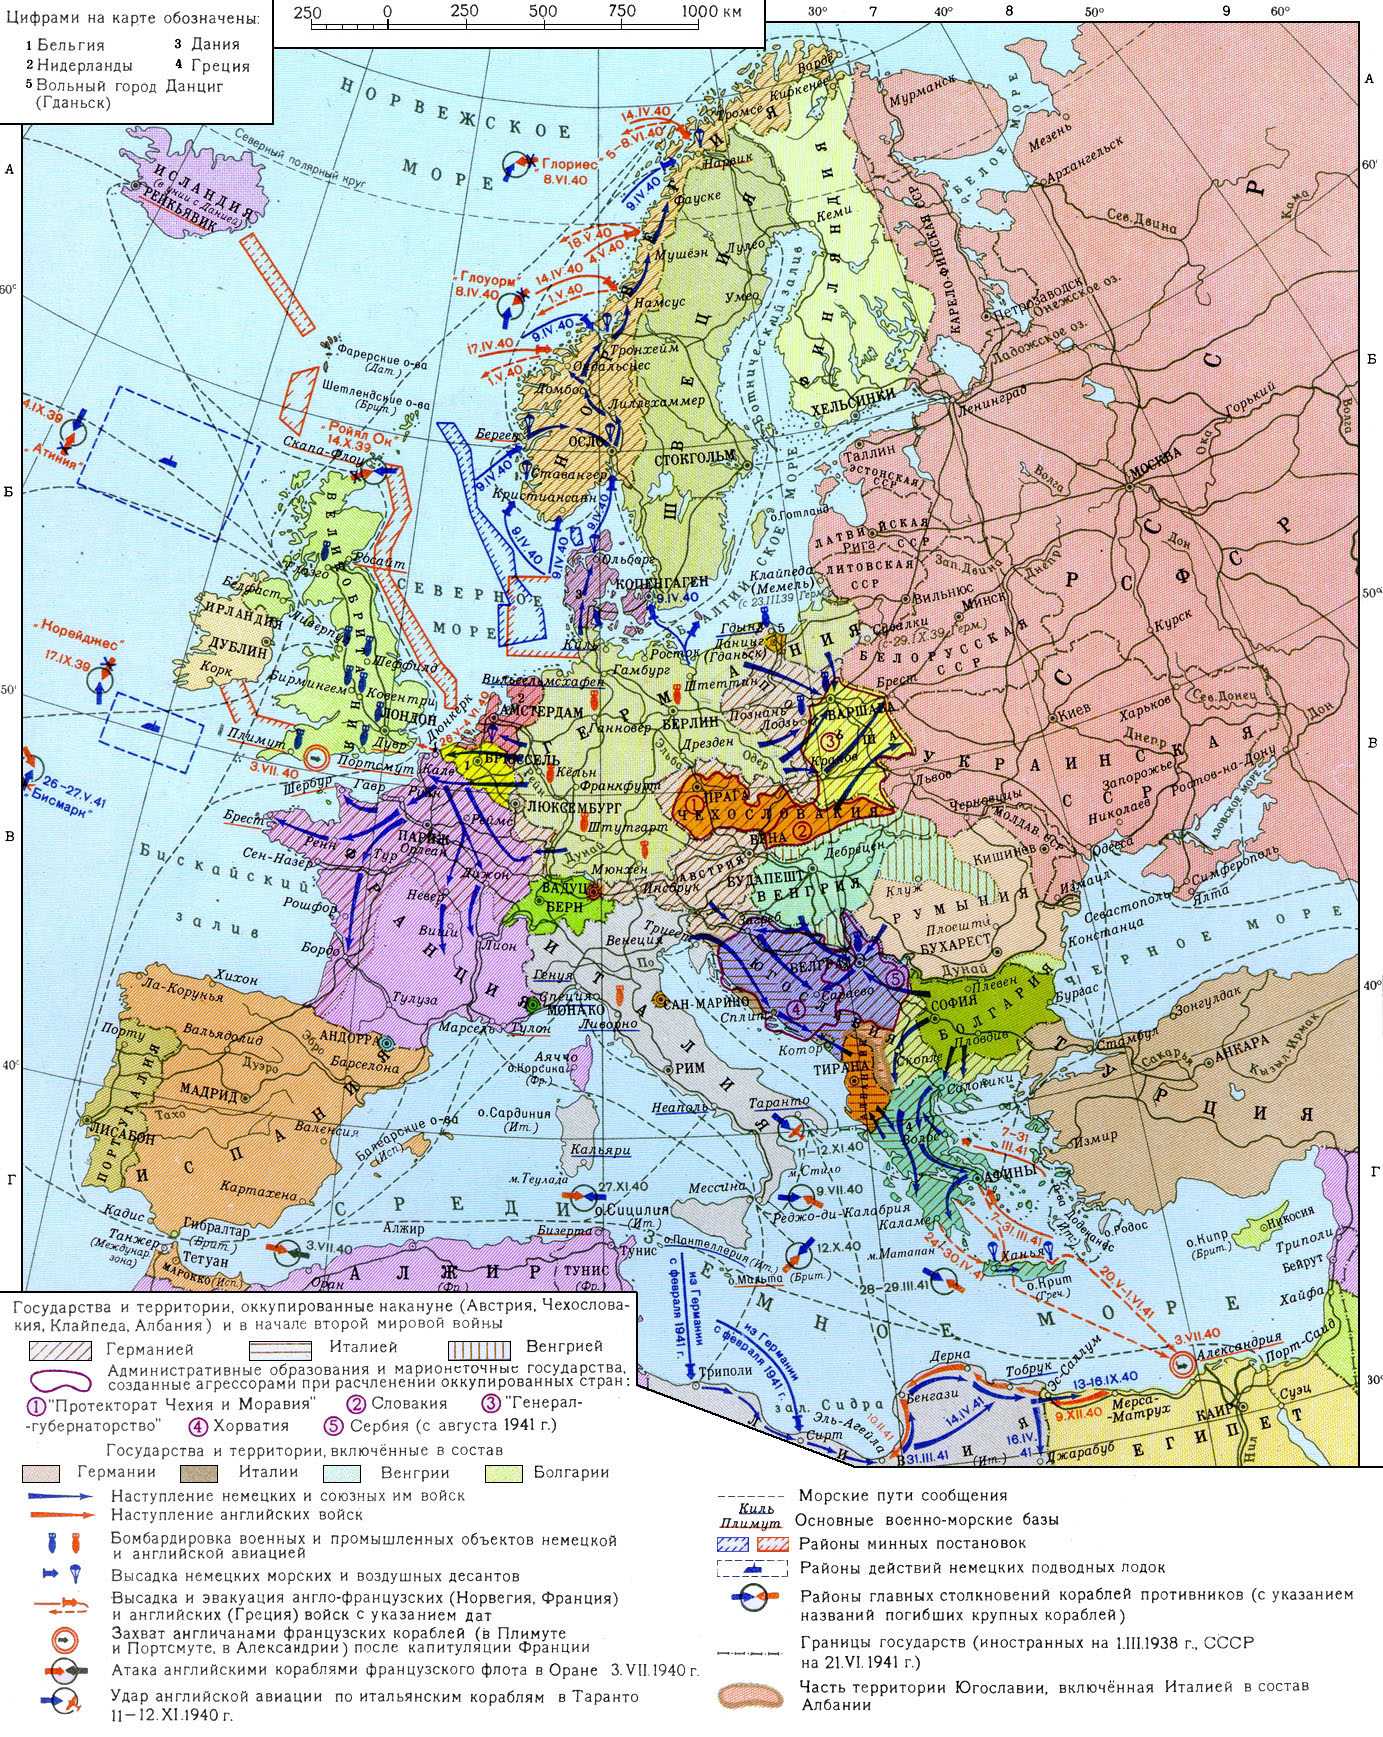 Планы второй мировой войны в европе. Карта второй мировой войны 1939-1945. Карта второй мировой 1939. Карта Европы на начало второй мировой войны.